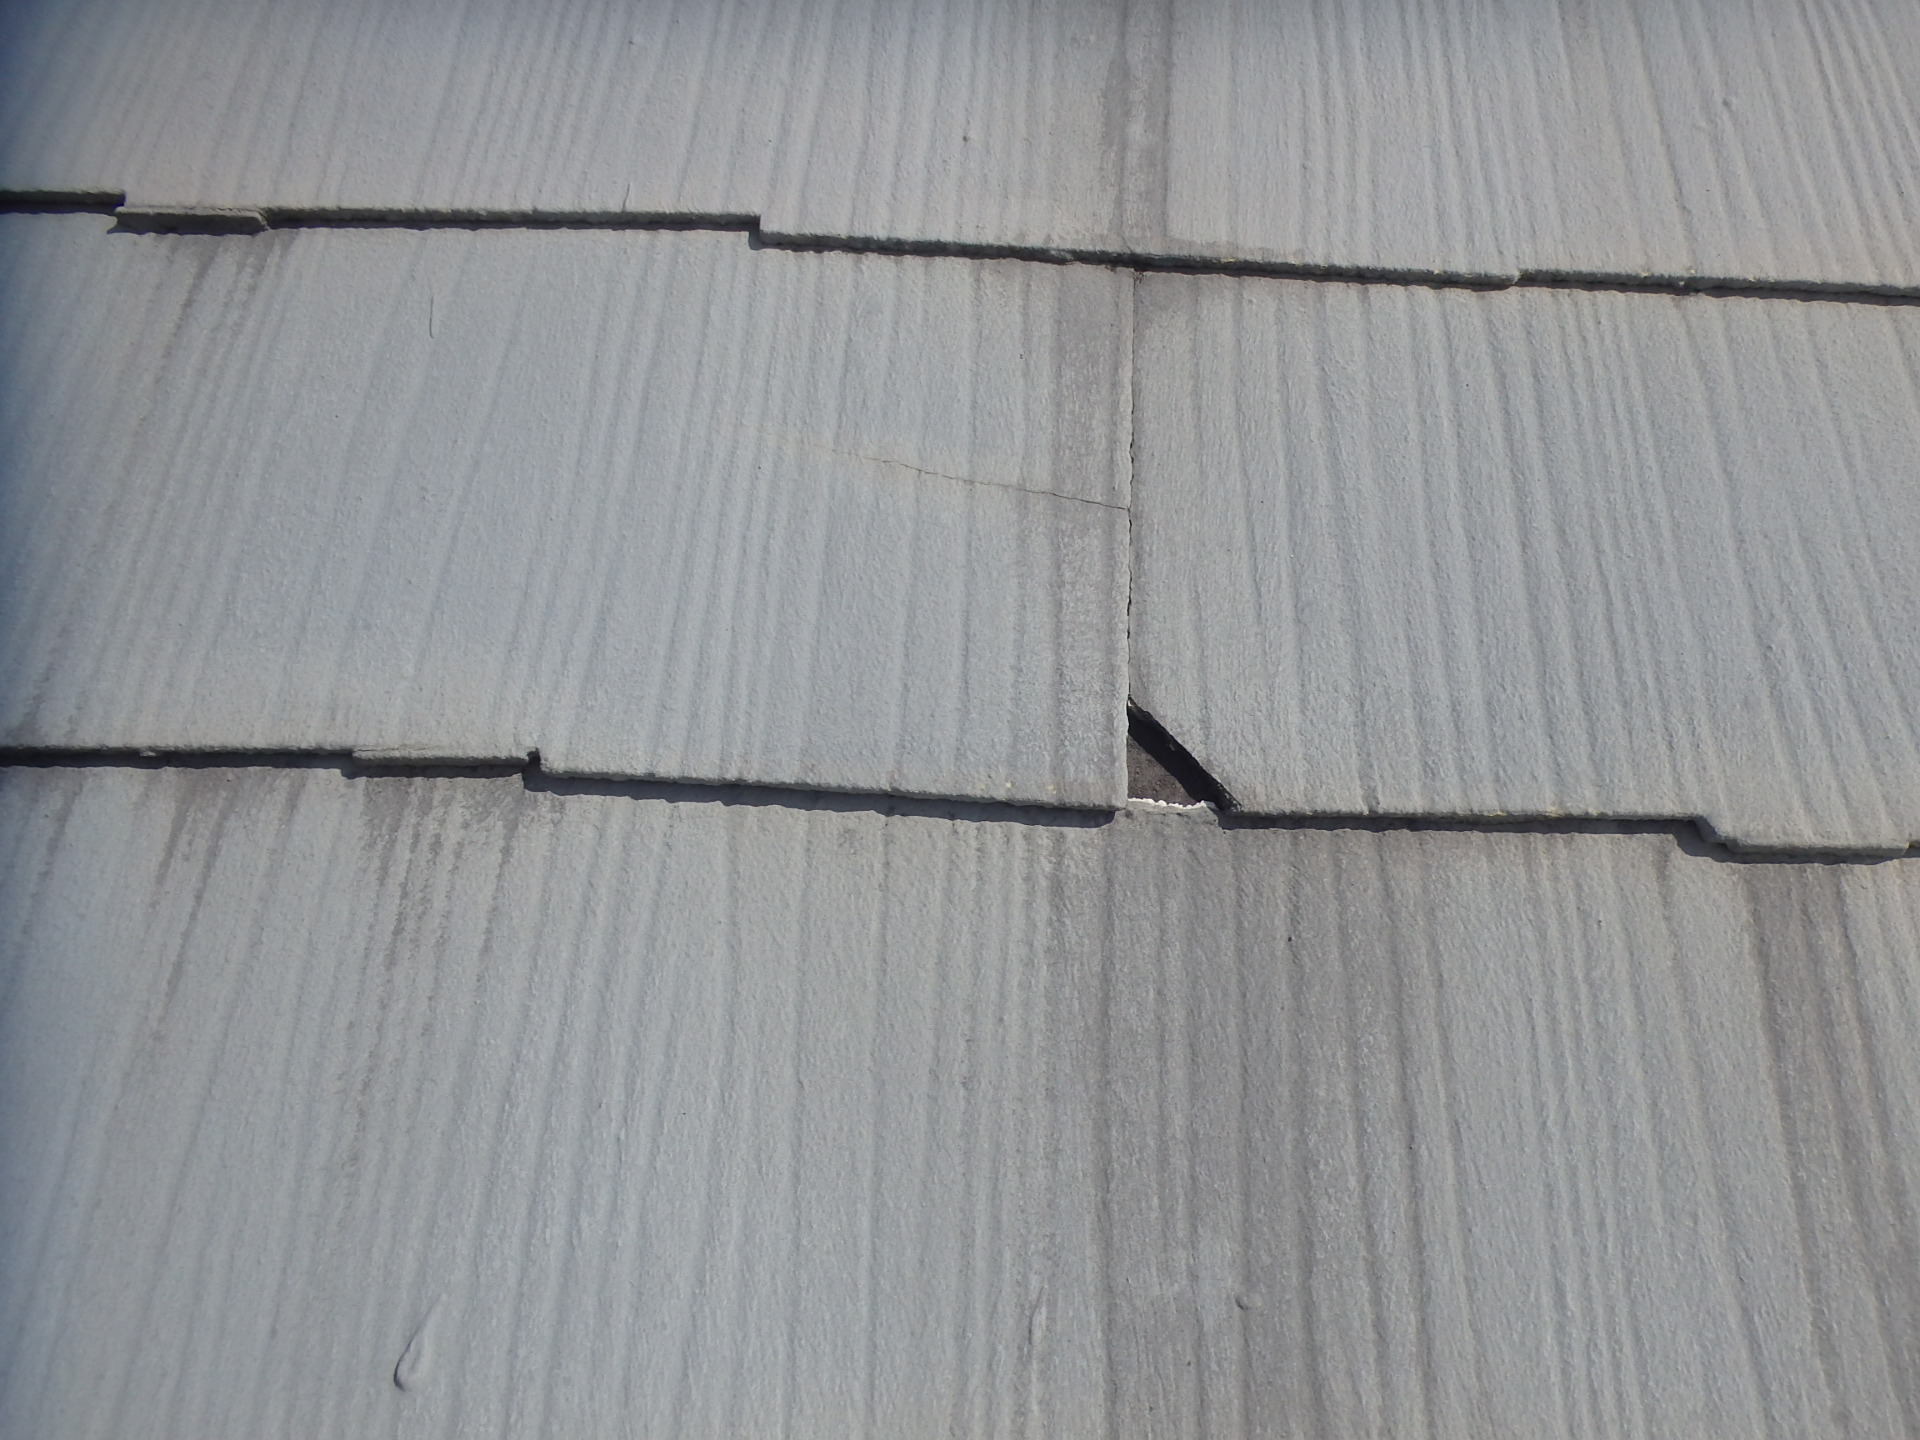 津市のお宅、2階屋根のカラーベスト屋根材の割れ欠け